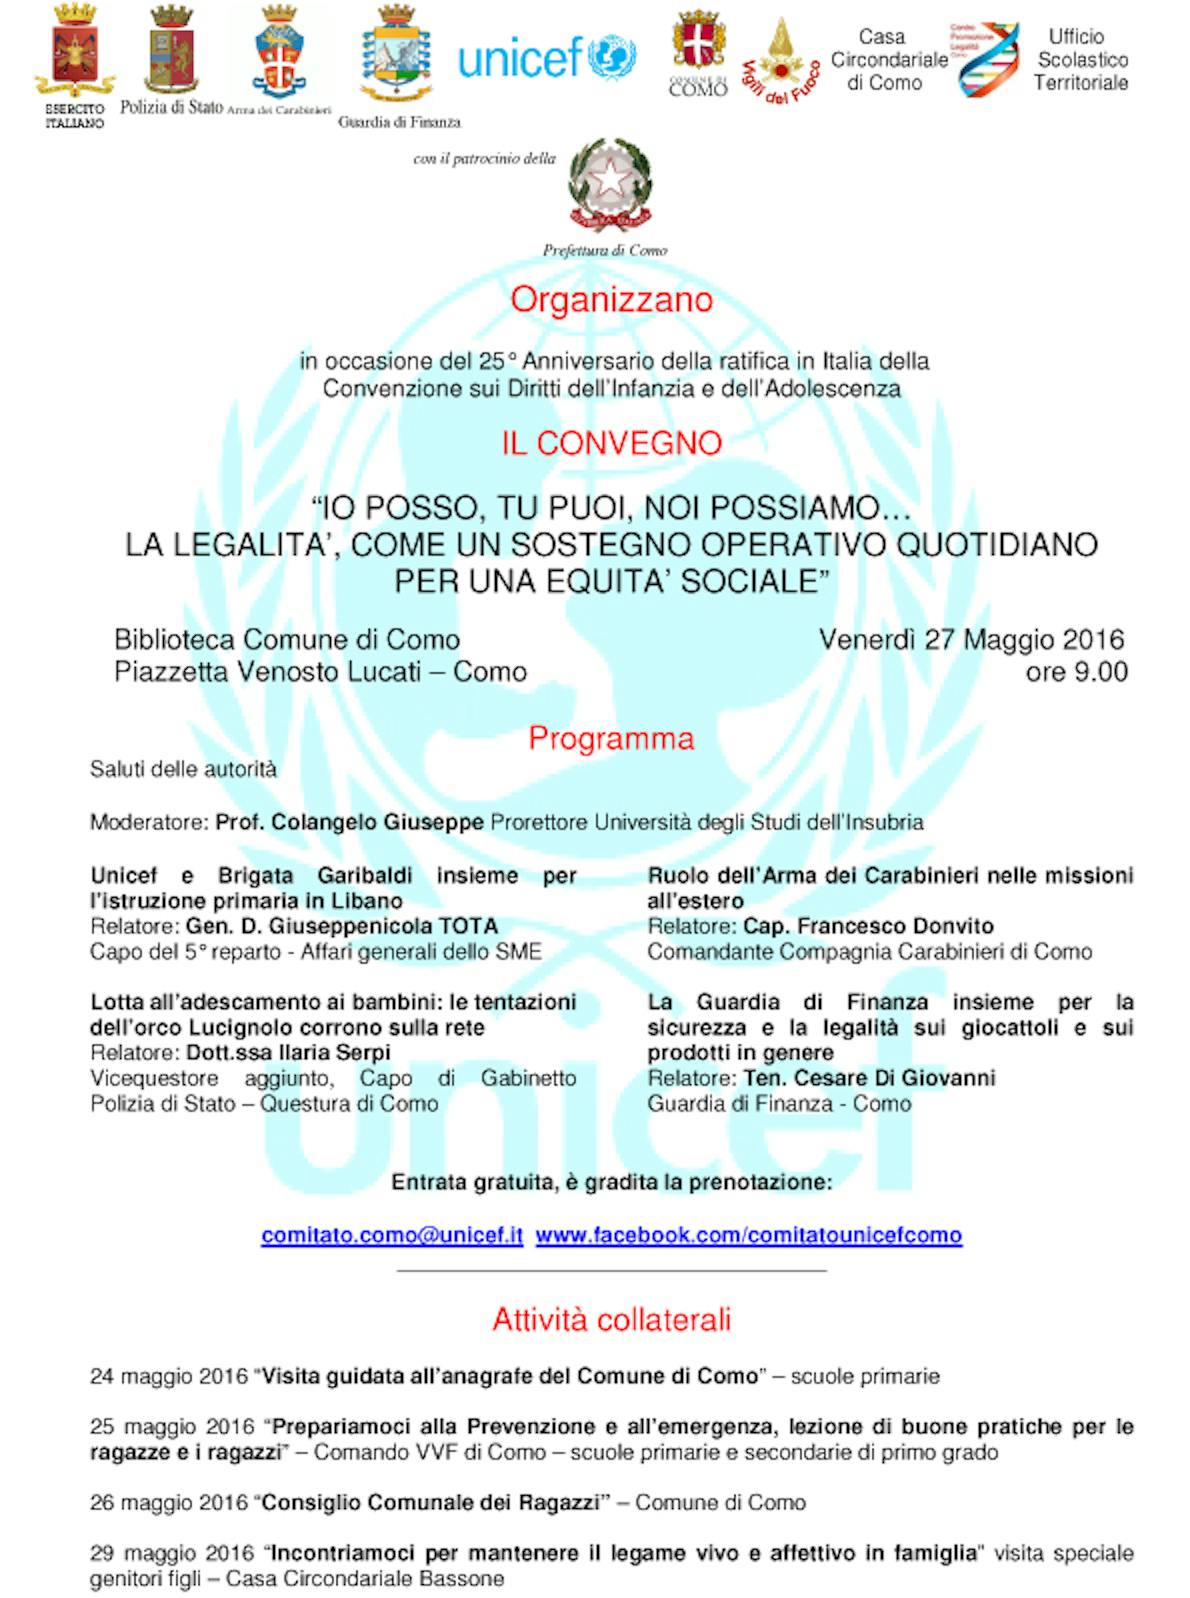 27 maggio 2016- Convegno per il 25° anniversario della ratifica in Italia della Convenzione sui diritti dell’Infanzia e dell’Adolescenza